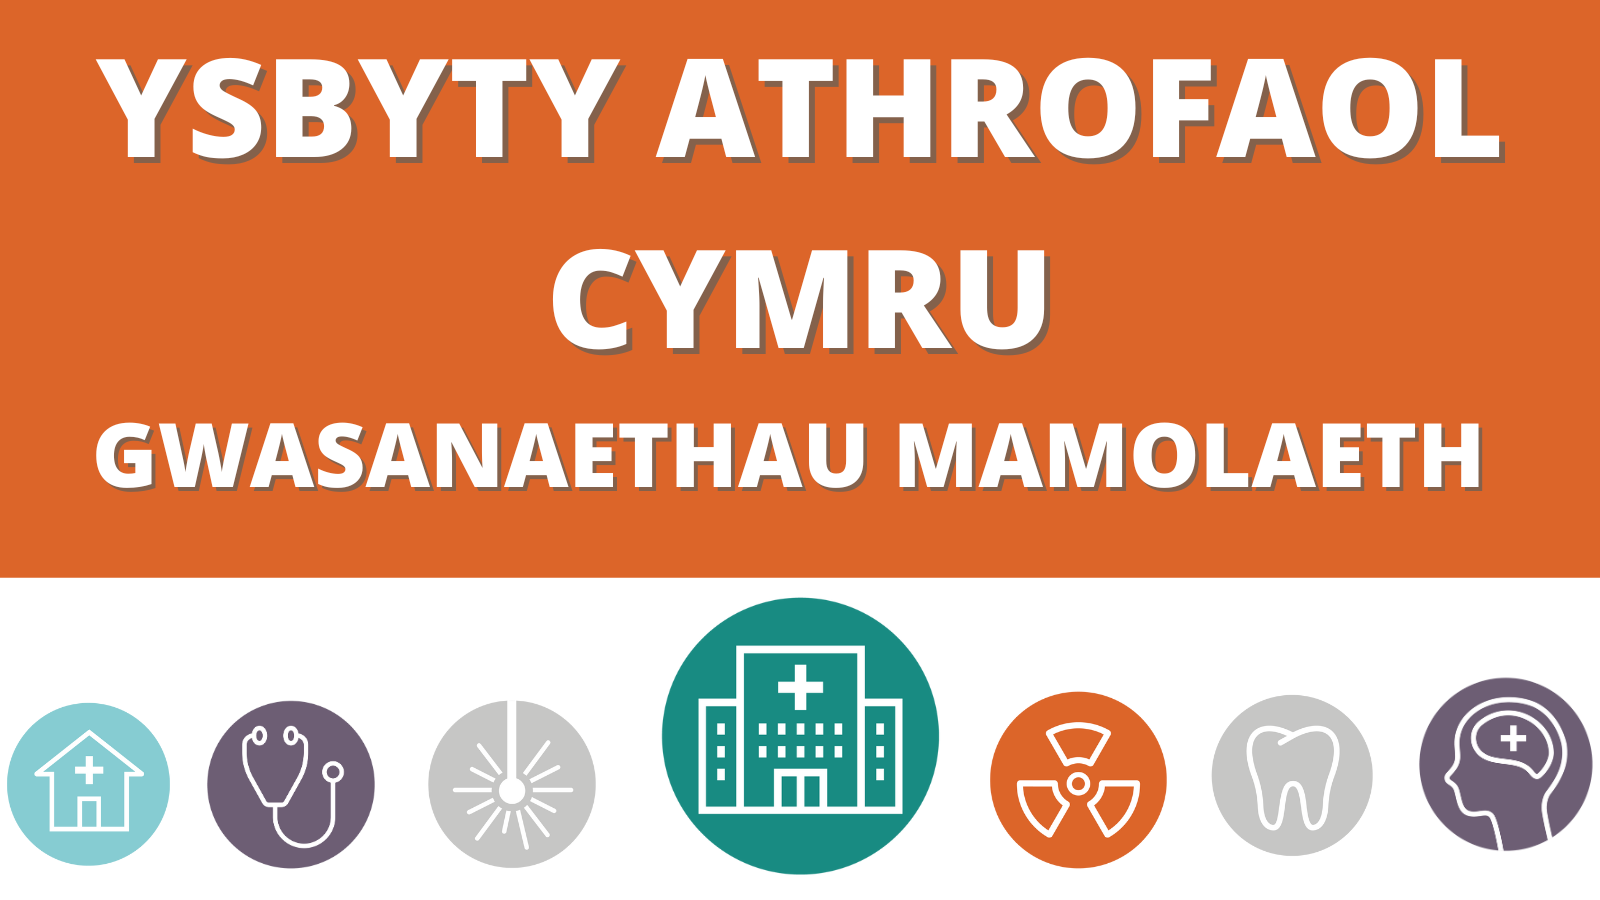 Ysbyty Athrofaol Cymru - Gwasanaethau Mamolaeth